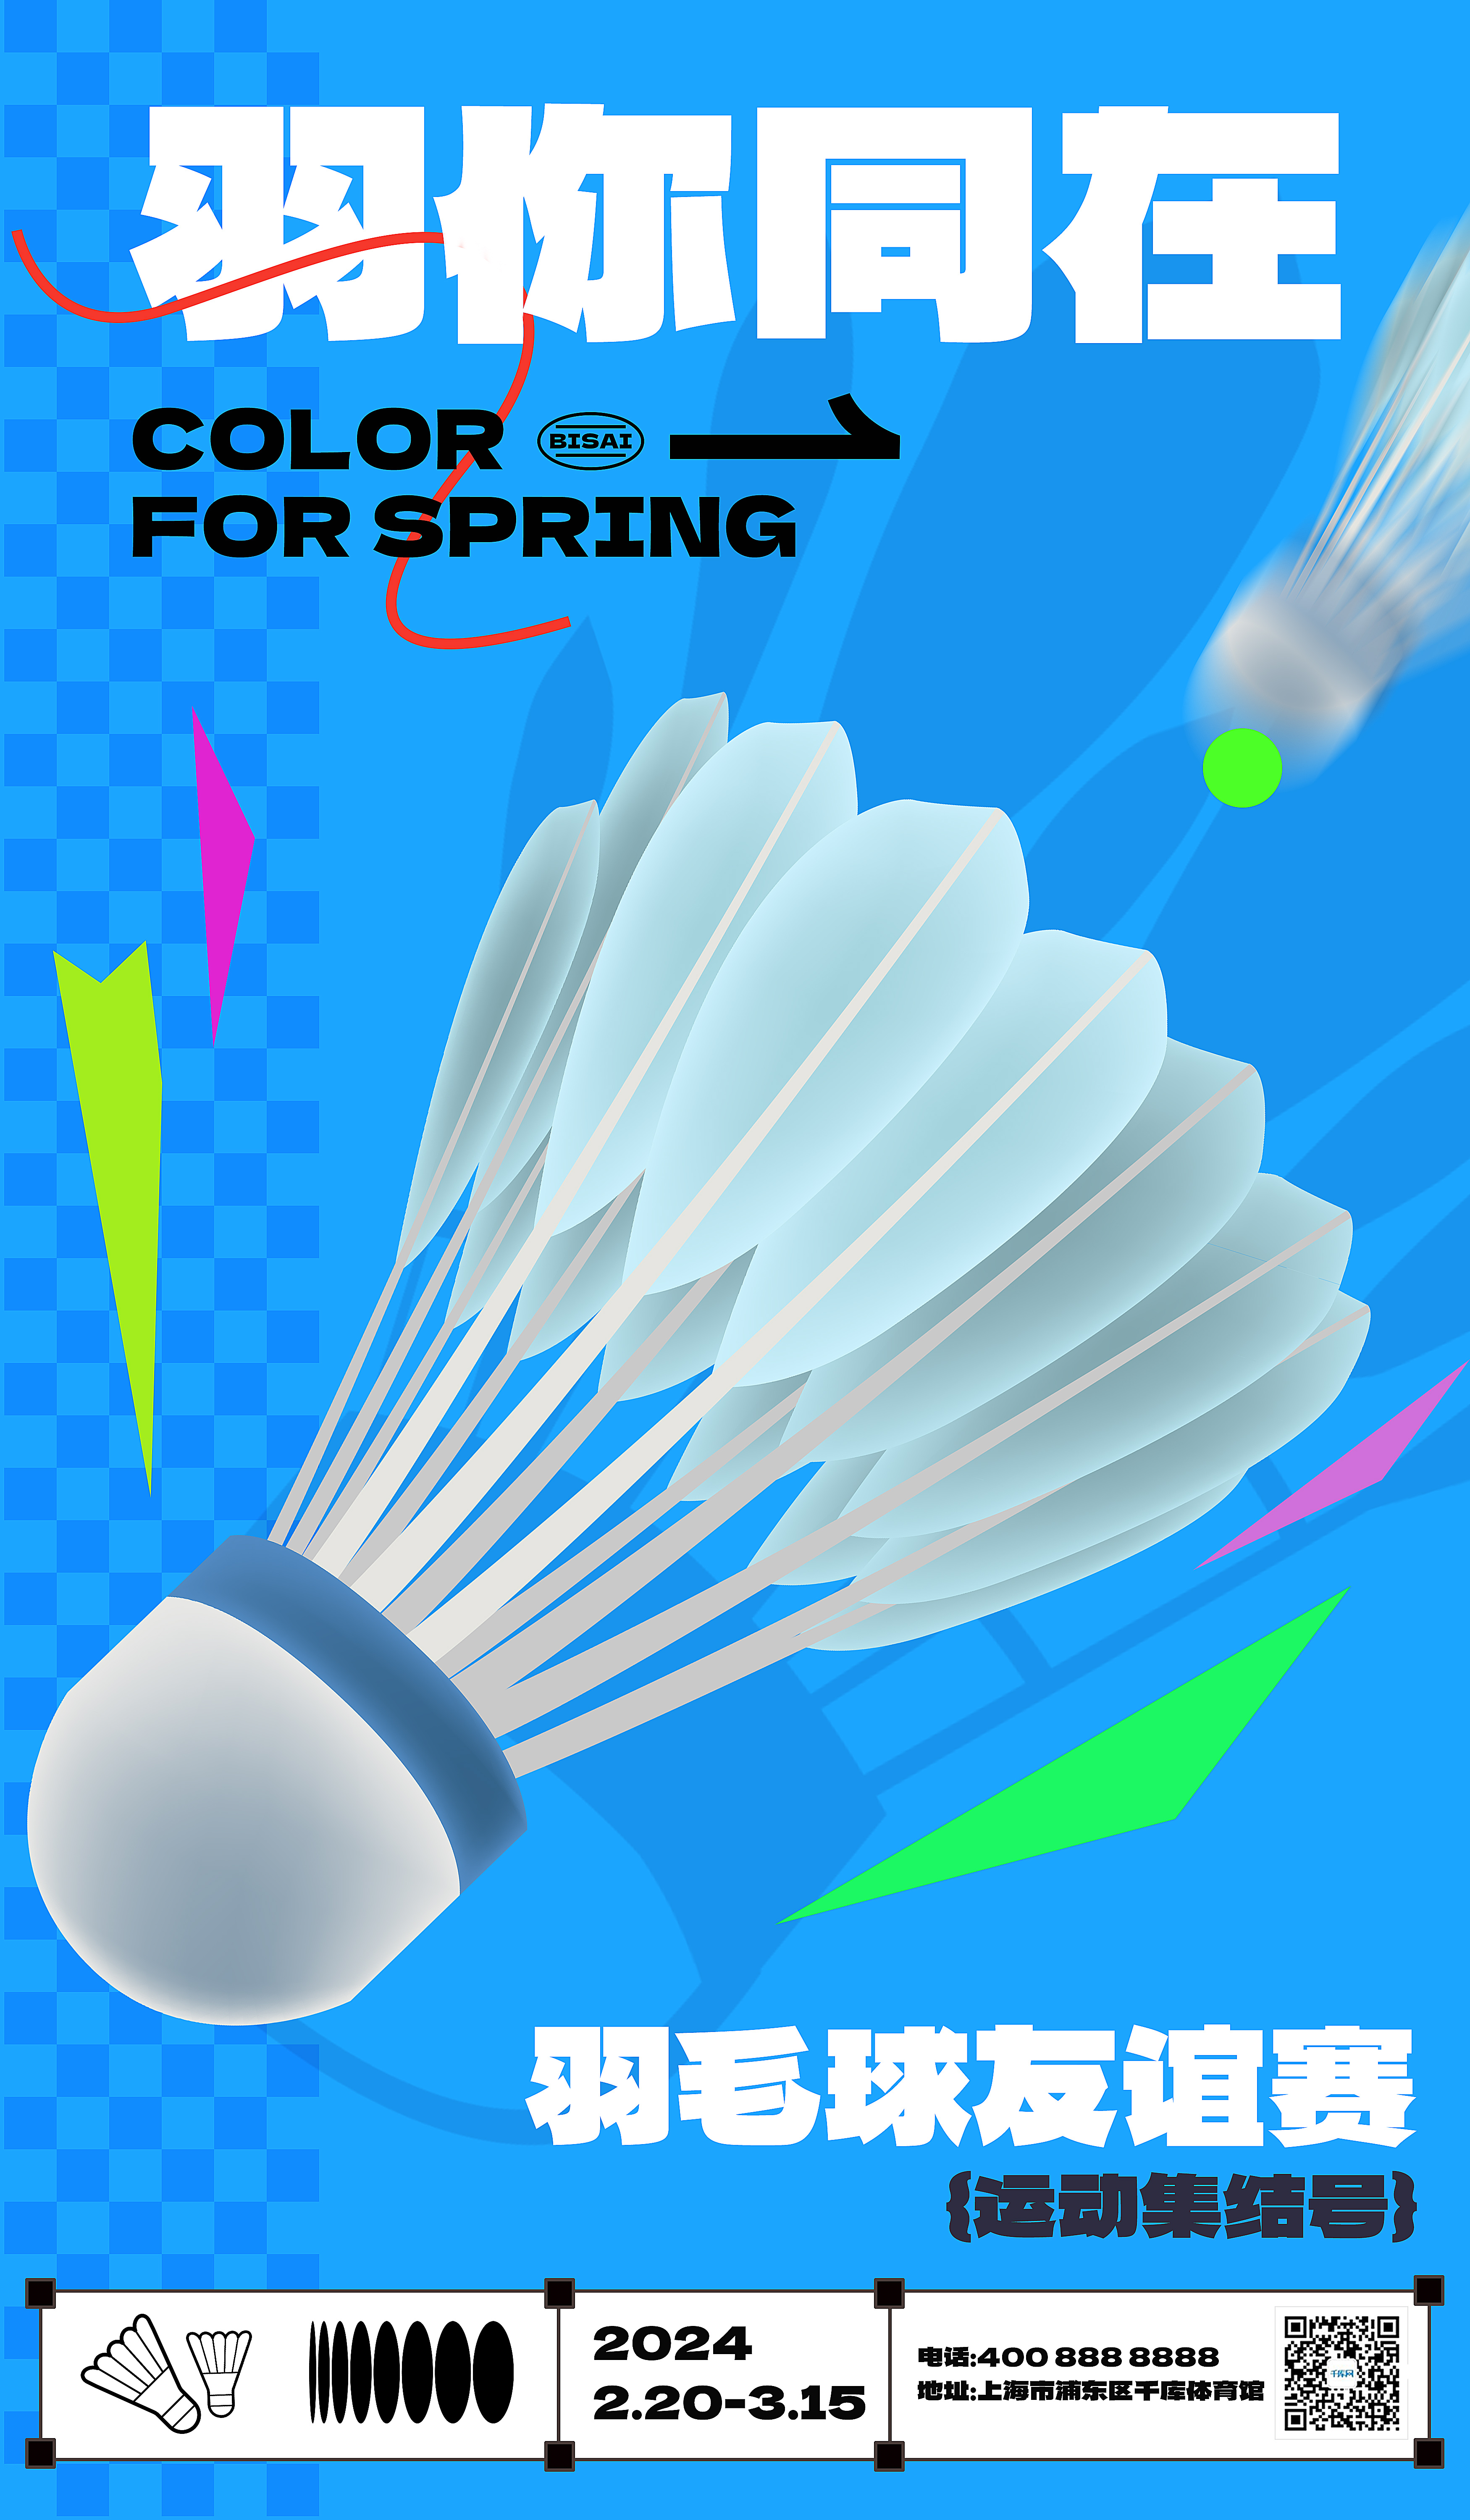 羽毛球比赛羽毛球蓝色简约广告宣传海报ps海报制作图片